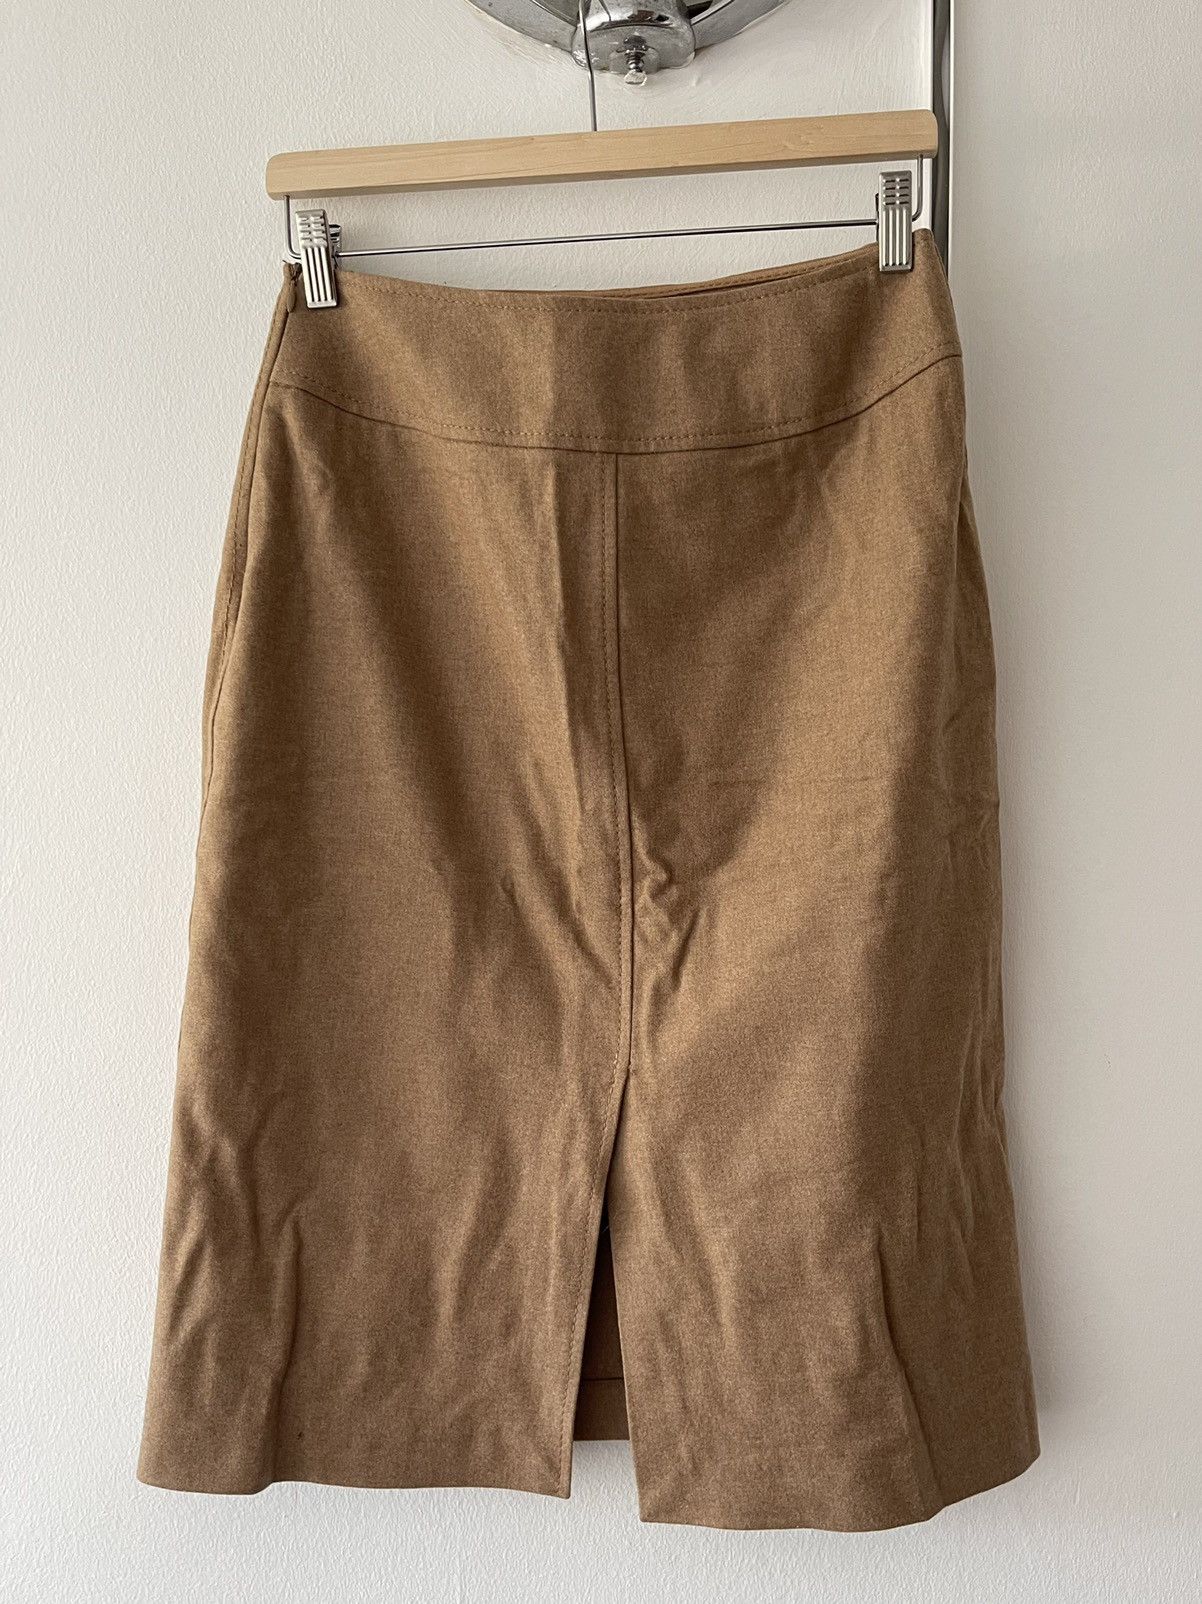 Miu Miu Vintage Miu Miu FW 1999 midi skirt Size 28" / US 6 / IT 42 - 4 Thumbnail